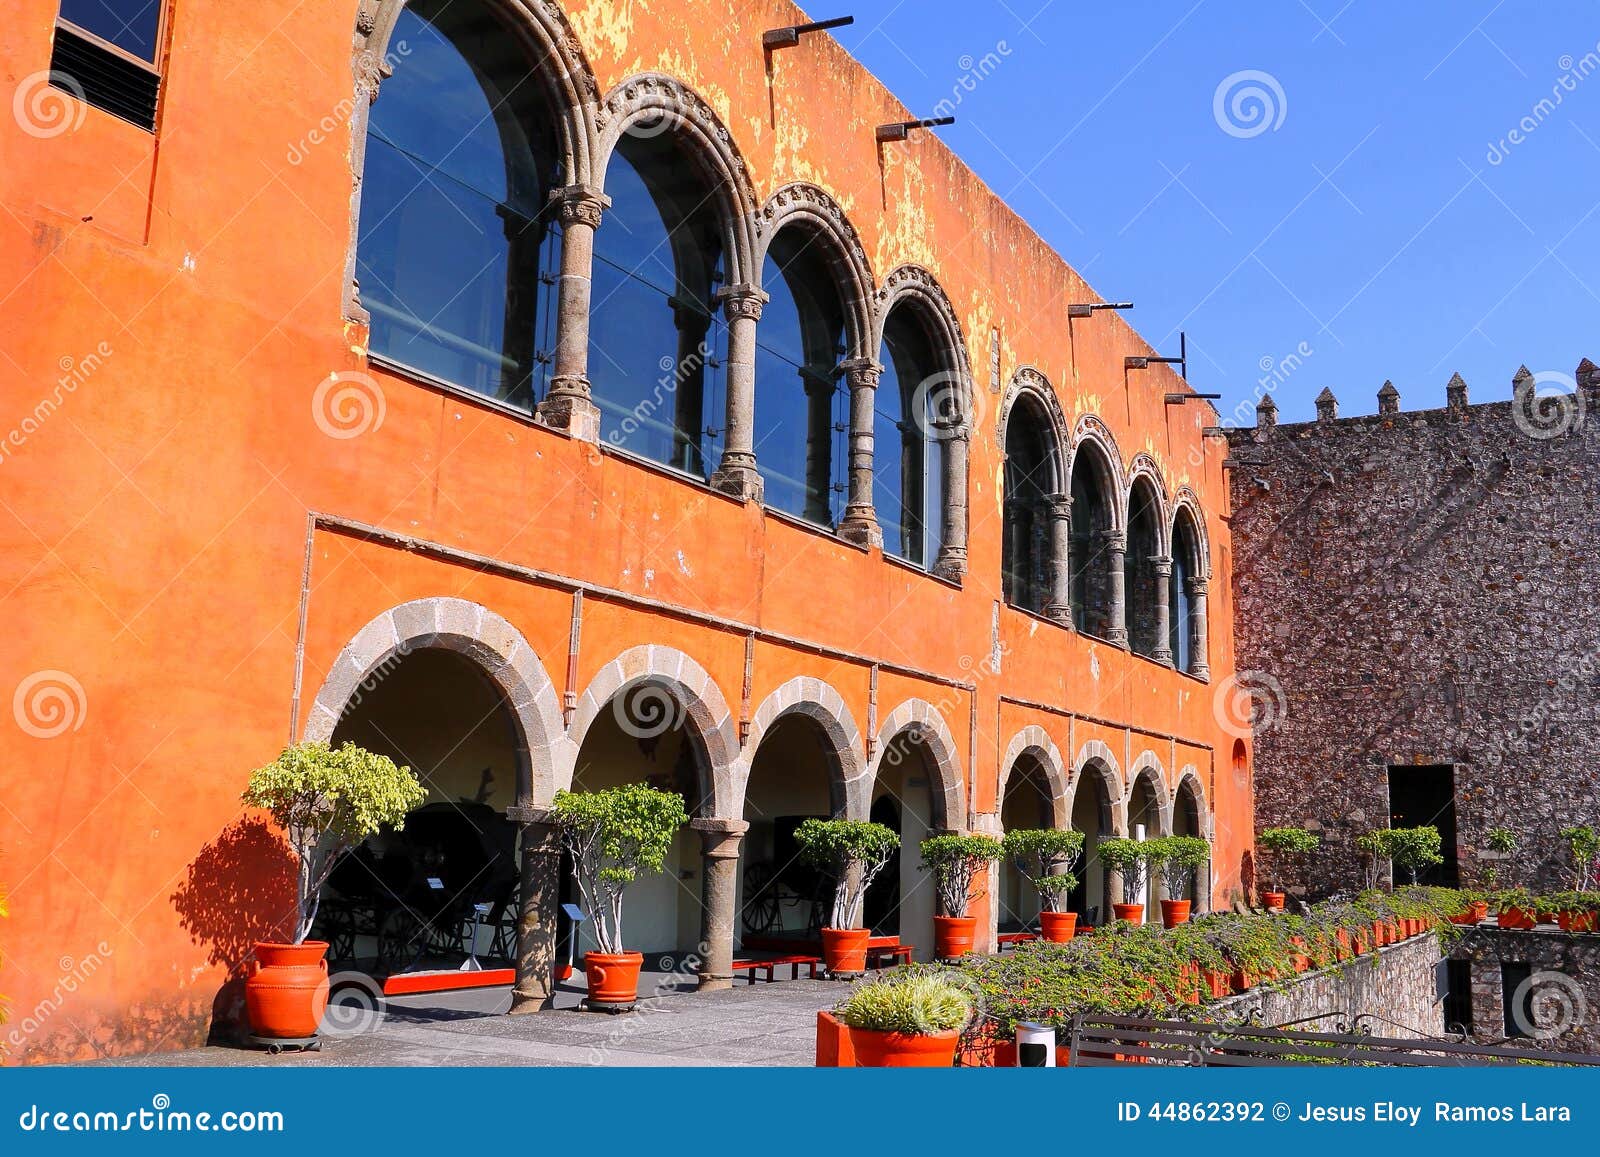 palacio de cortes, cuernavaca city, morelos, mexico. i